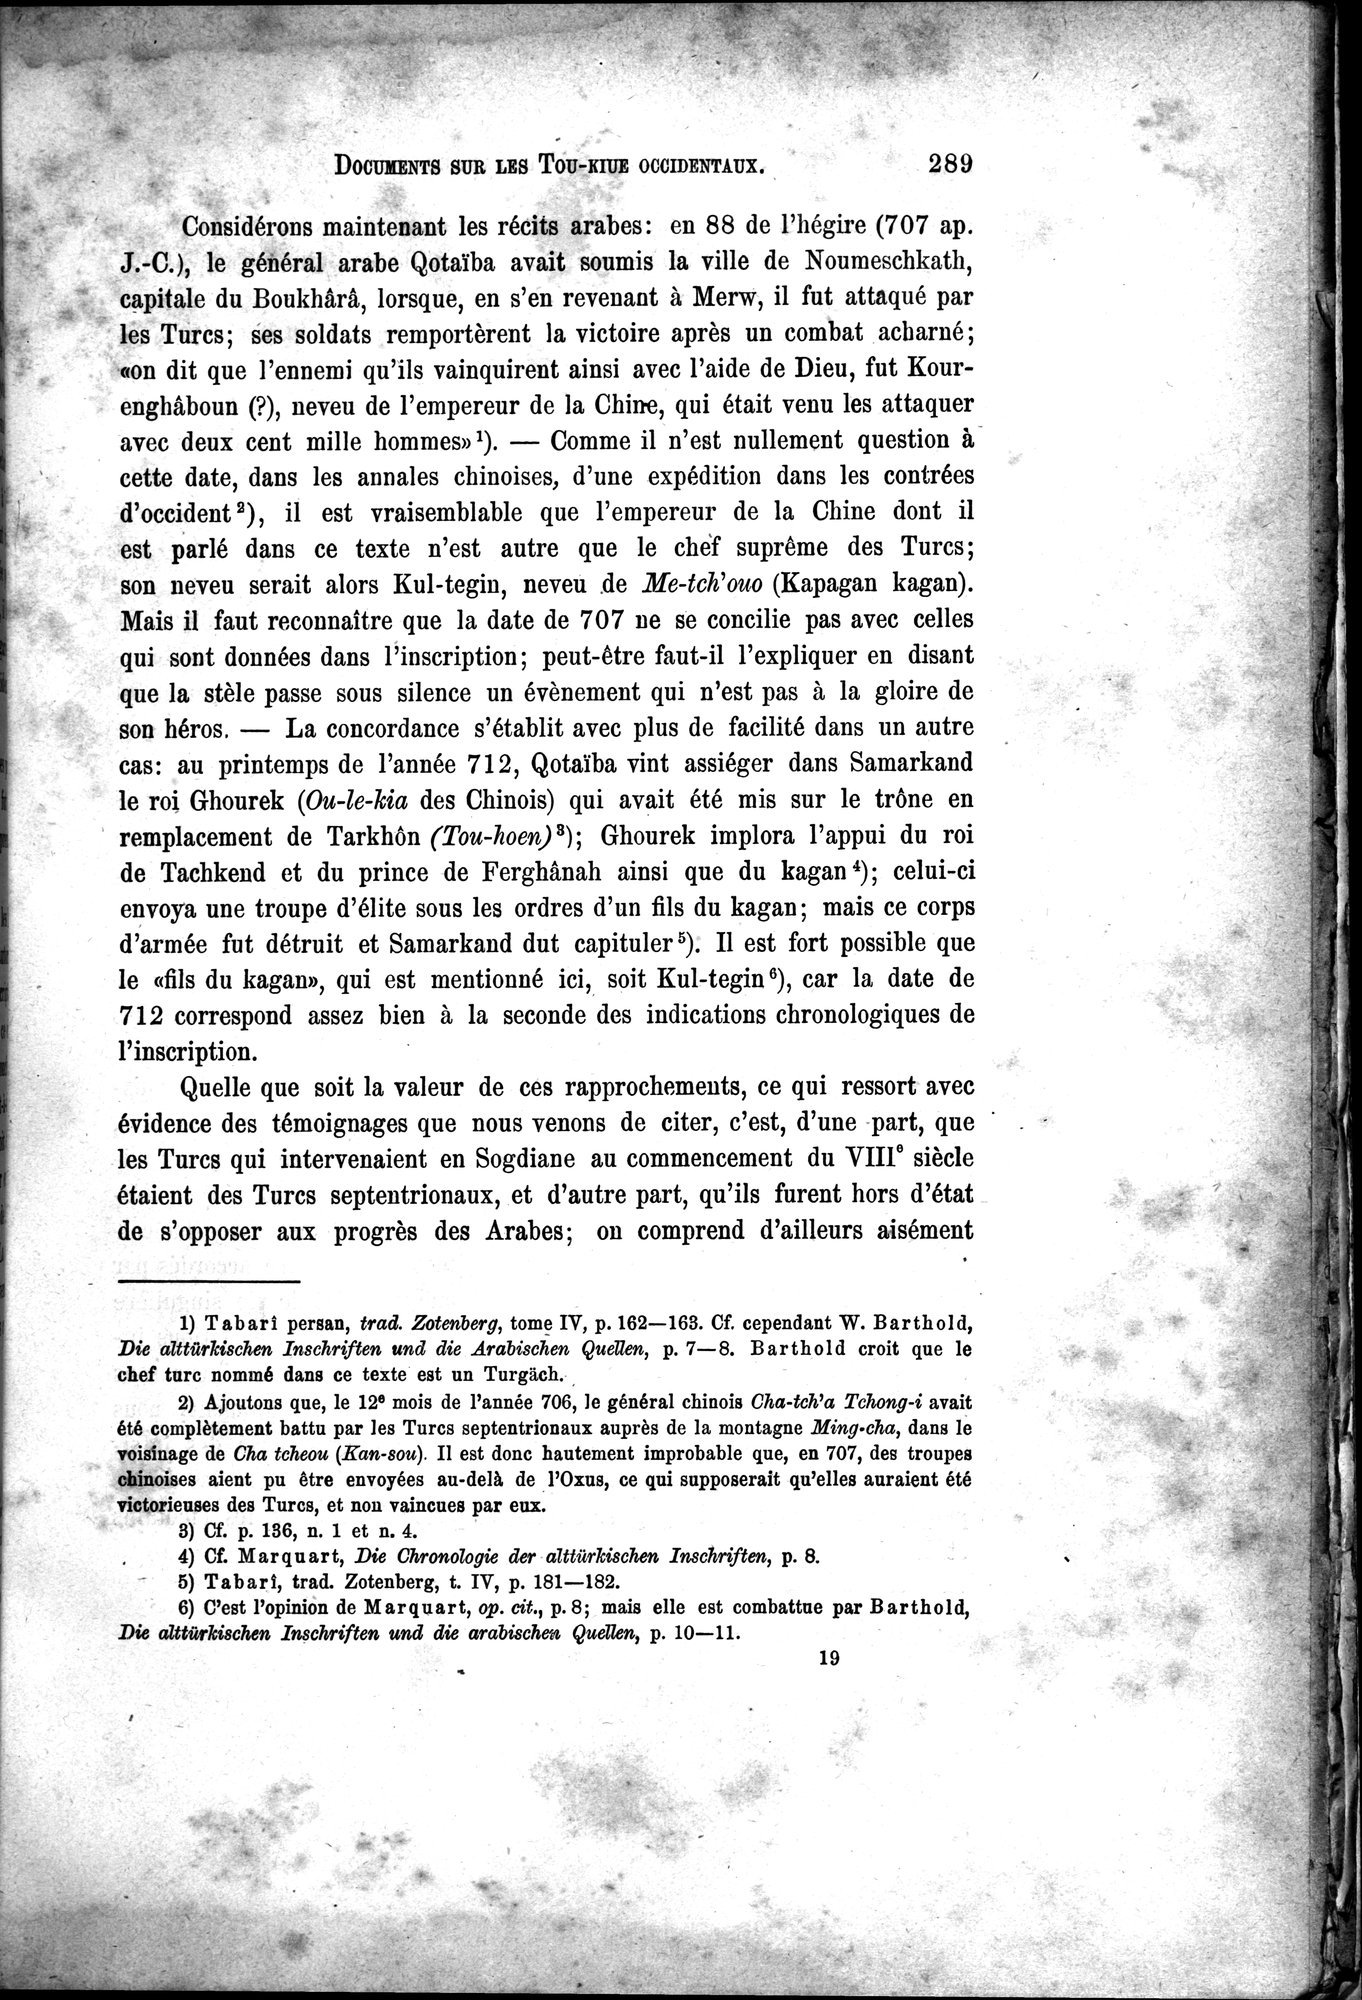 Documents sur les Tou-kiue (Turcs) occidentaux : vol.1 / Page 299 (Grayscale High Resolution Image)